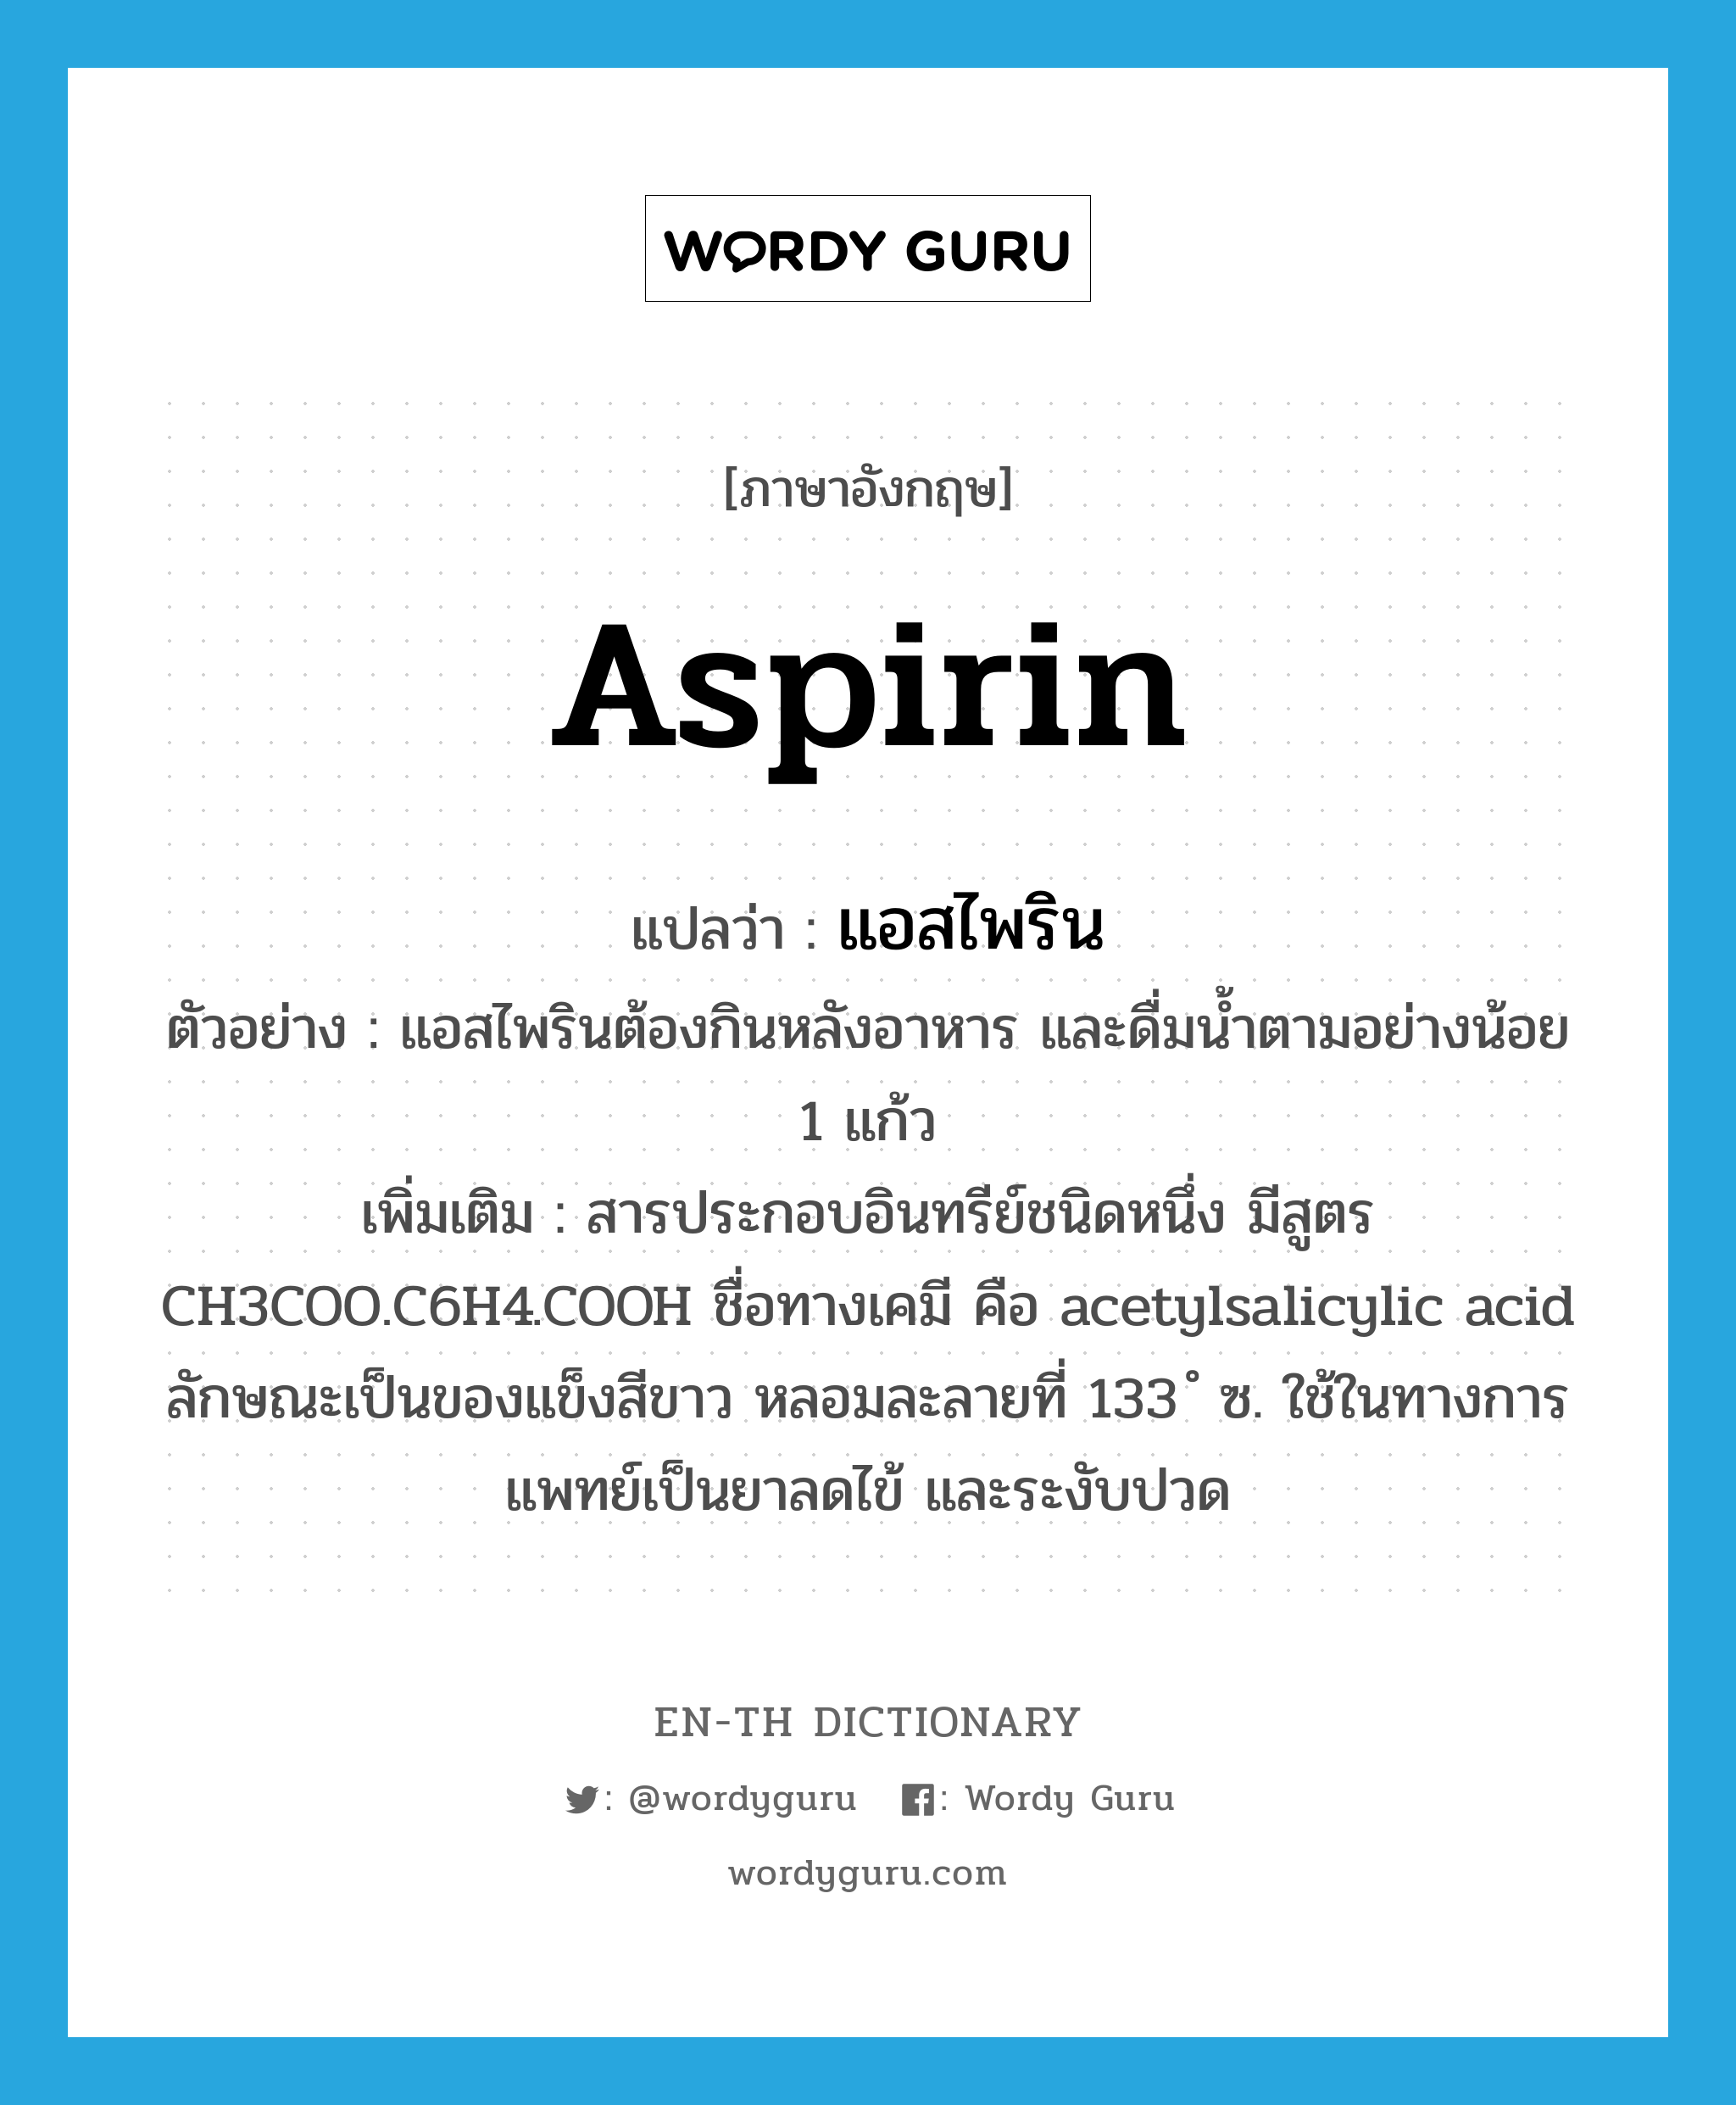 aspirin แปลว่า?, คำศัพท์ภาษาอังกฤษ aspirin แปลว่า แอสไพริน ประเภท N ตัวอย่าง แอสไพรินต้องกินหลังอาหาร และดื่มน้ำตามอย่างน้อย 1 แก้ว เพิ่มเติม สารประกอบอินทรีย์ชนิดหนึ่ง มีสูตร CH3COO.C6H4.COOH ชื่อทางเคมี คือ acetylsalicylic acid ลักษณะเป็นของแข็งสีขาว หลอมละลายที่ 133 ํ ซ. ใช้ในทางการแพทย์เป็นยาลดไข้ และระงับปวด หมวด N